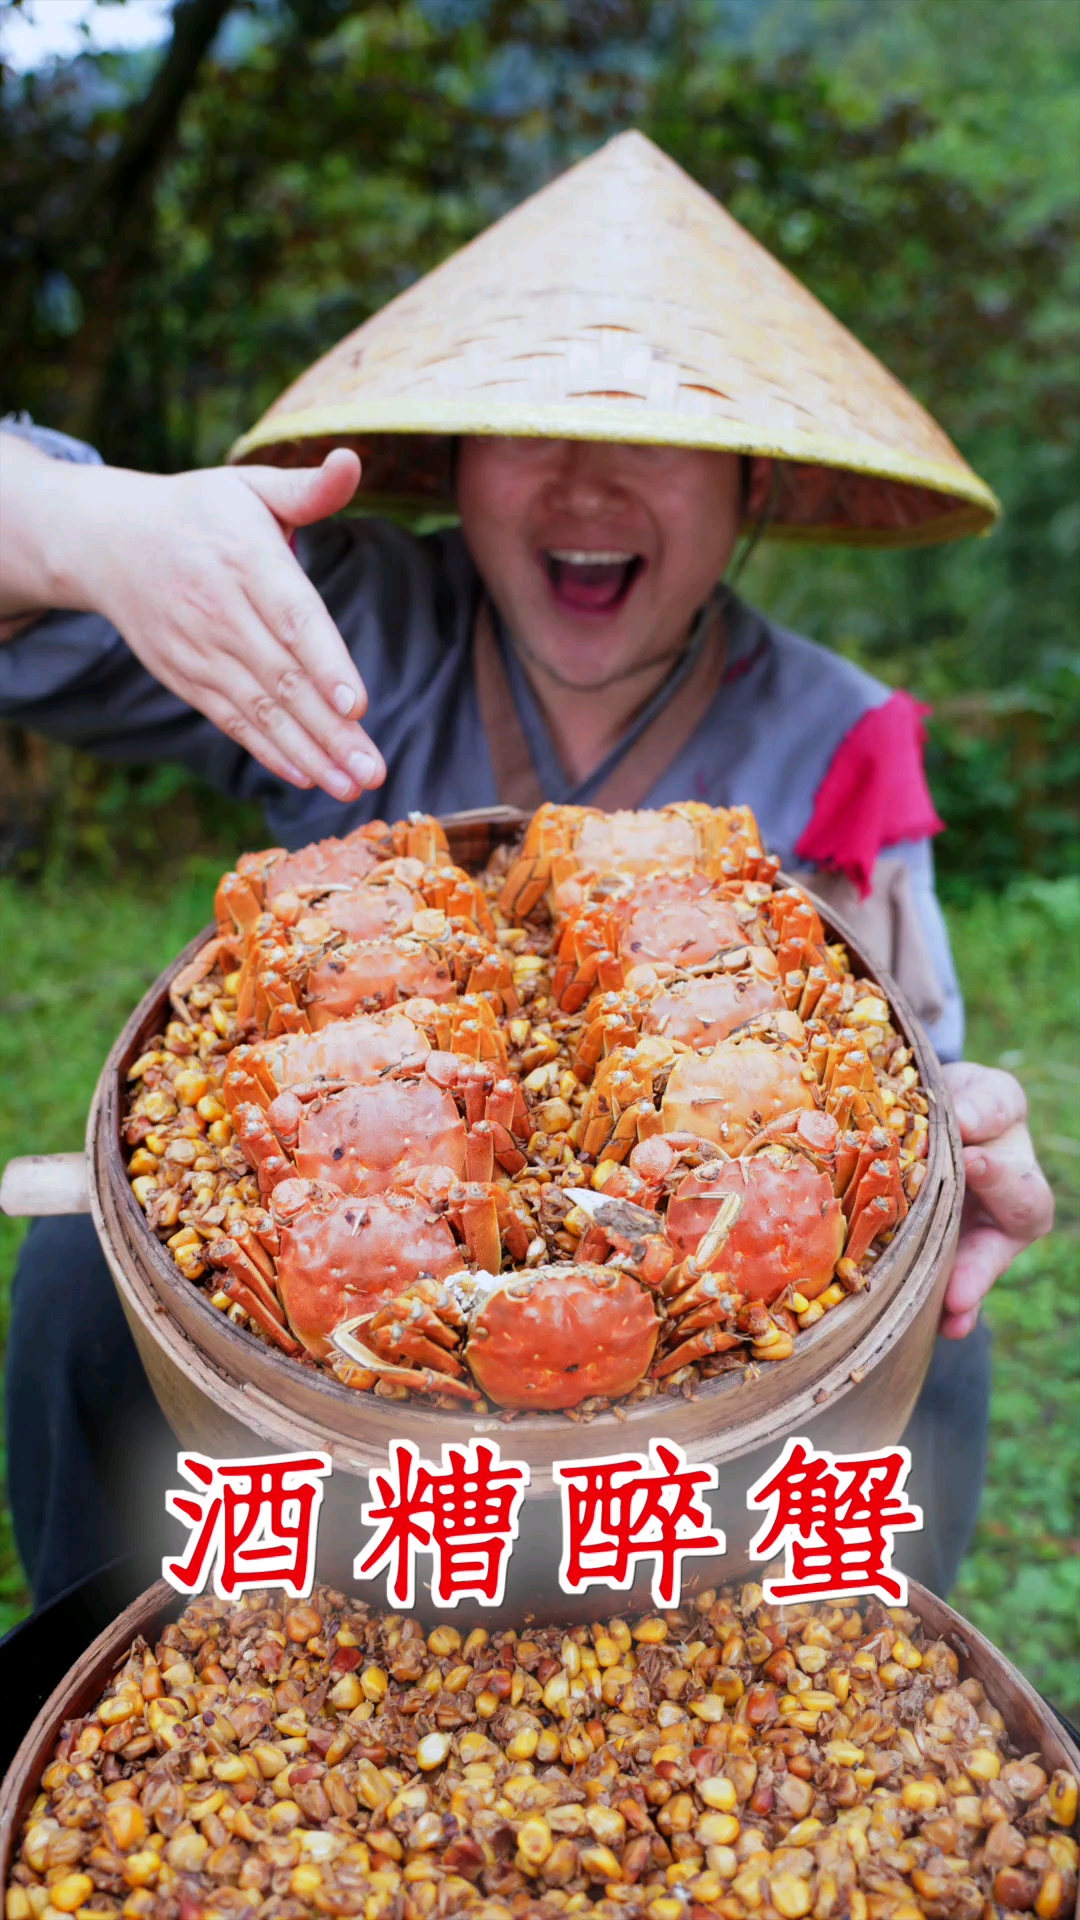 美食5斤螃蟹配酒糟小伙用土方法做醉蟹这味道太鲜美